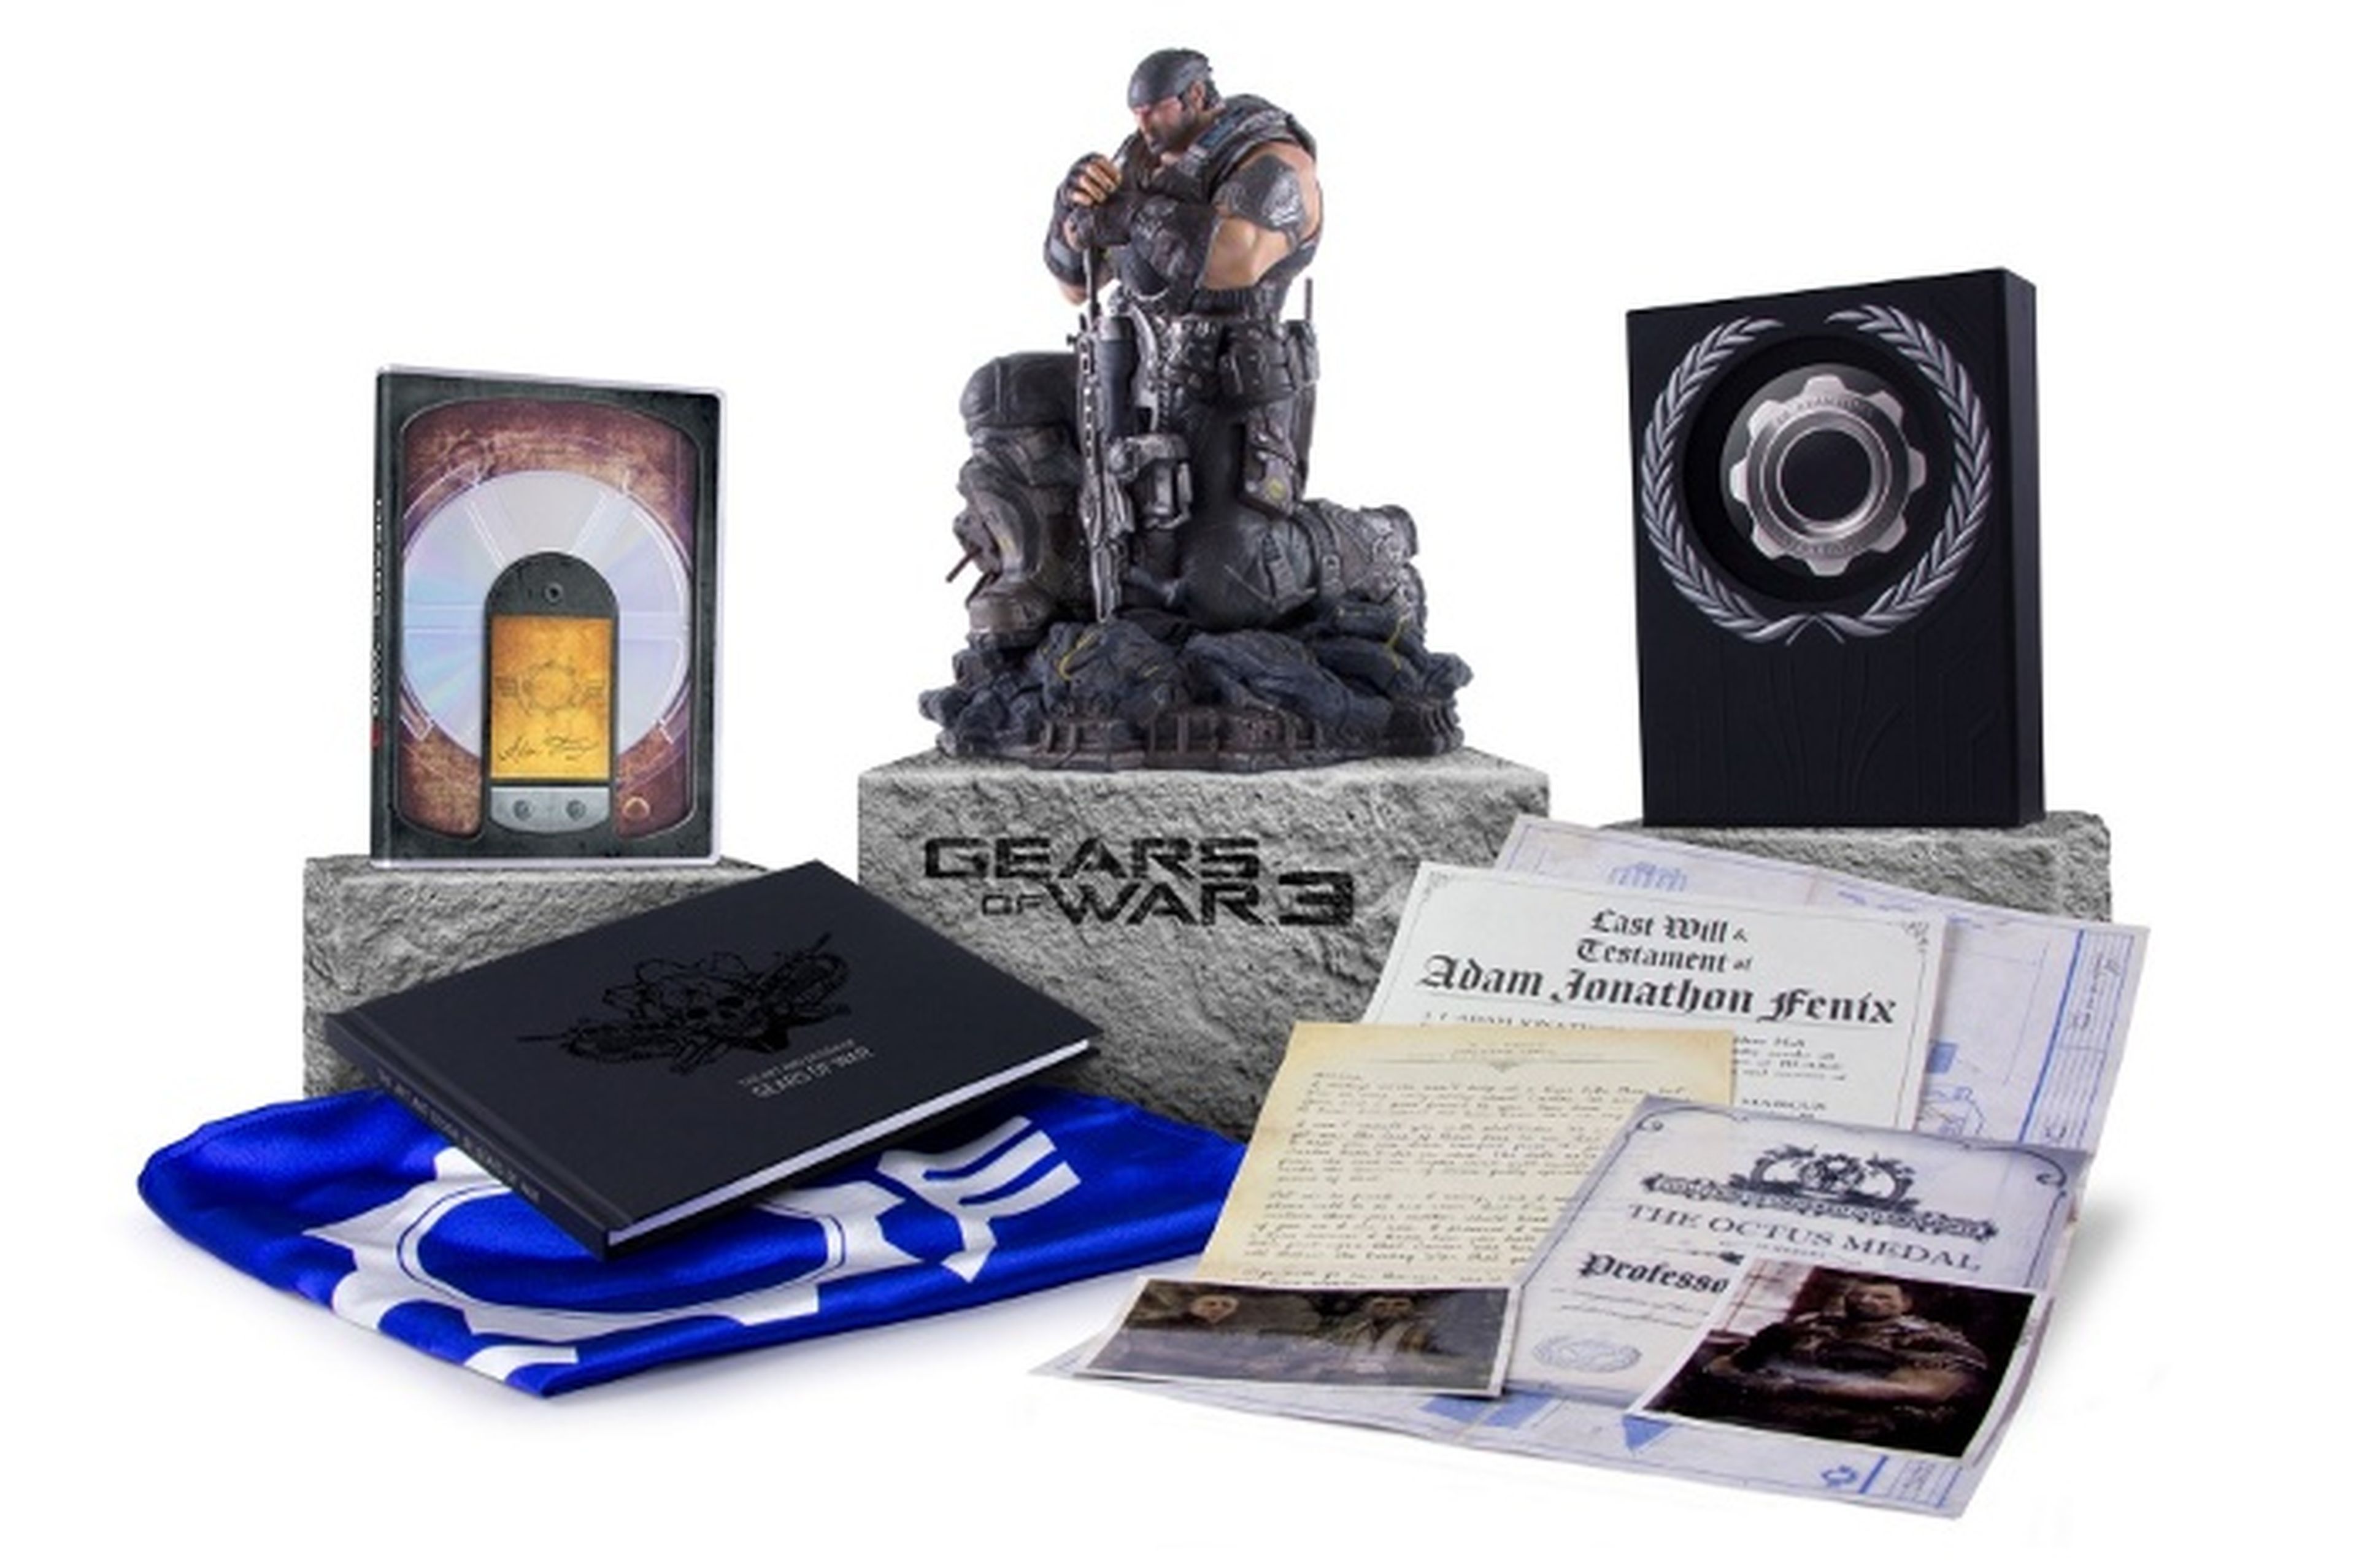 Las ediciones exclusivas de Gears of War 3